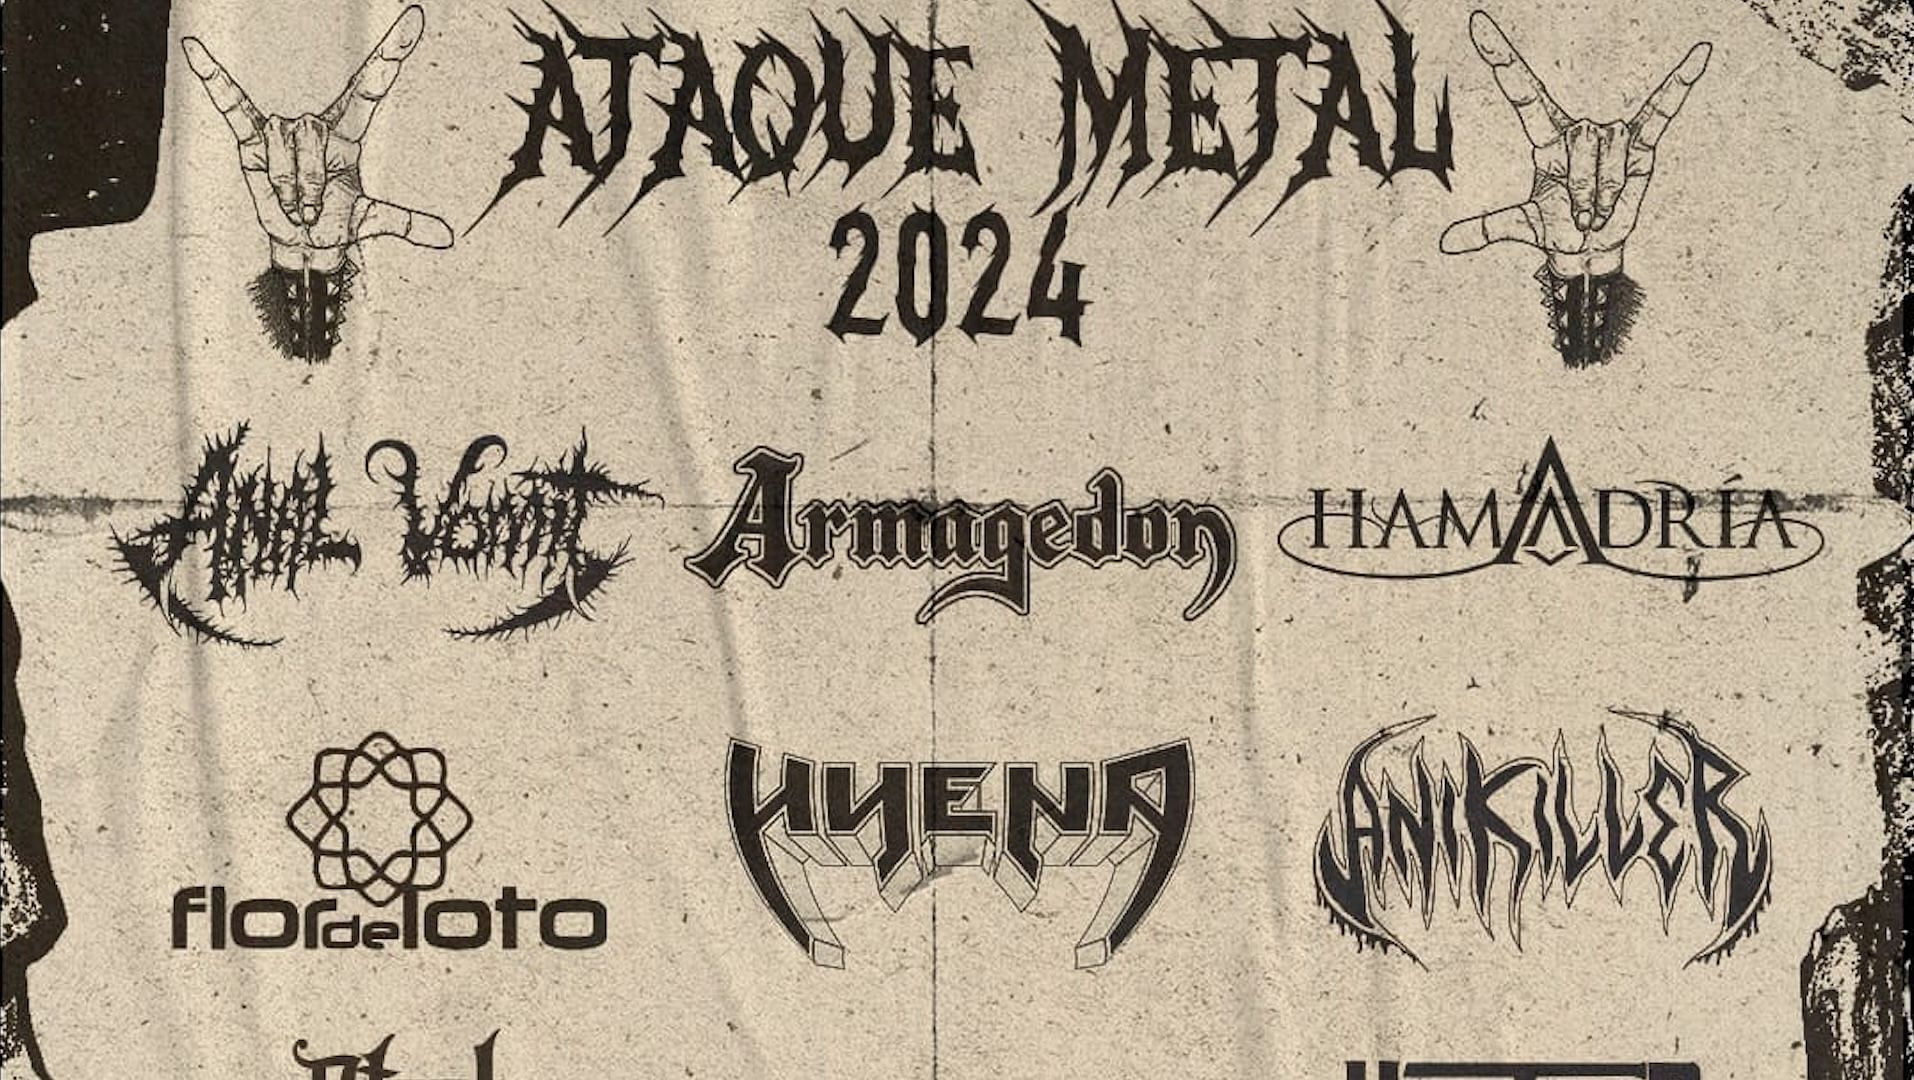 Ataque Metal Festival, Metal, Music Event, Metal Music, Event, Festival